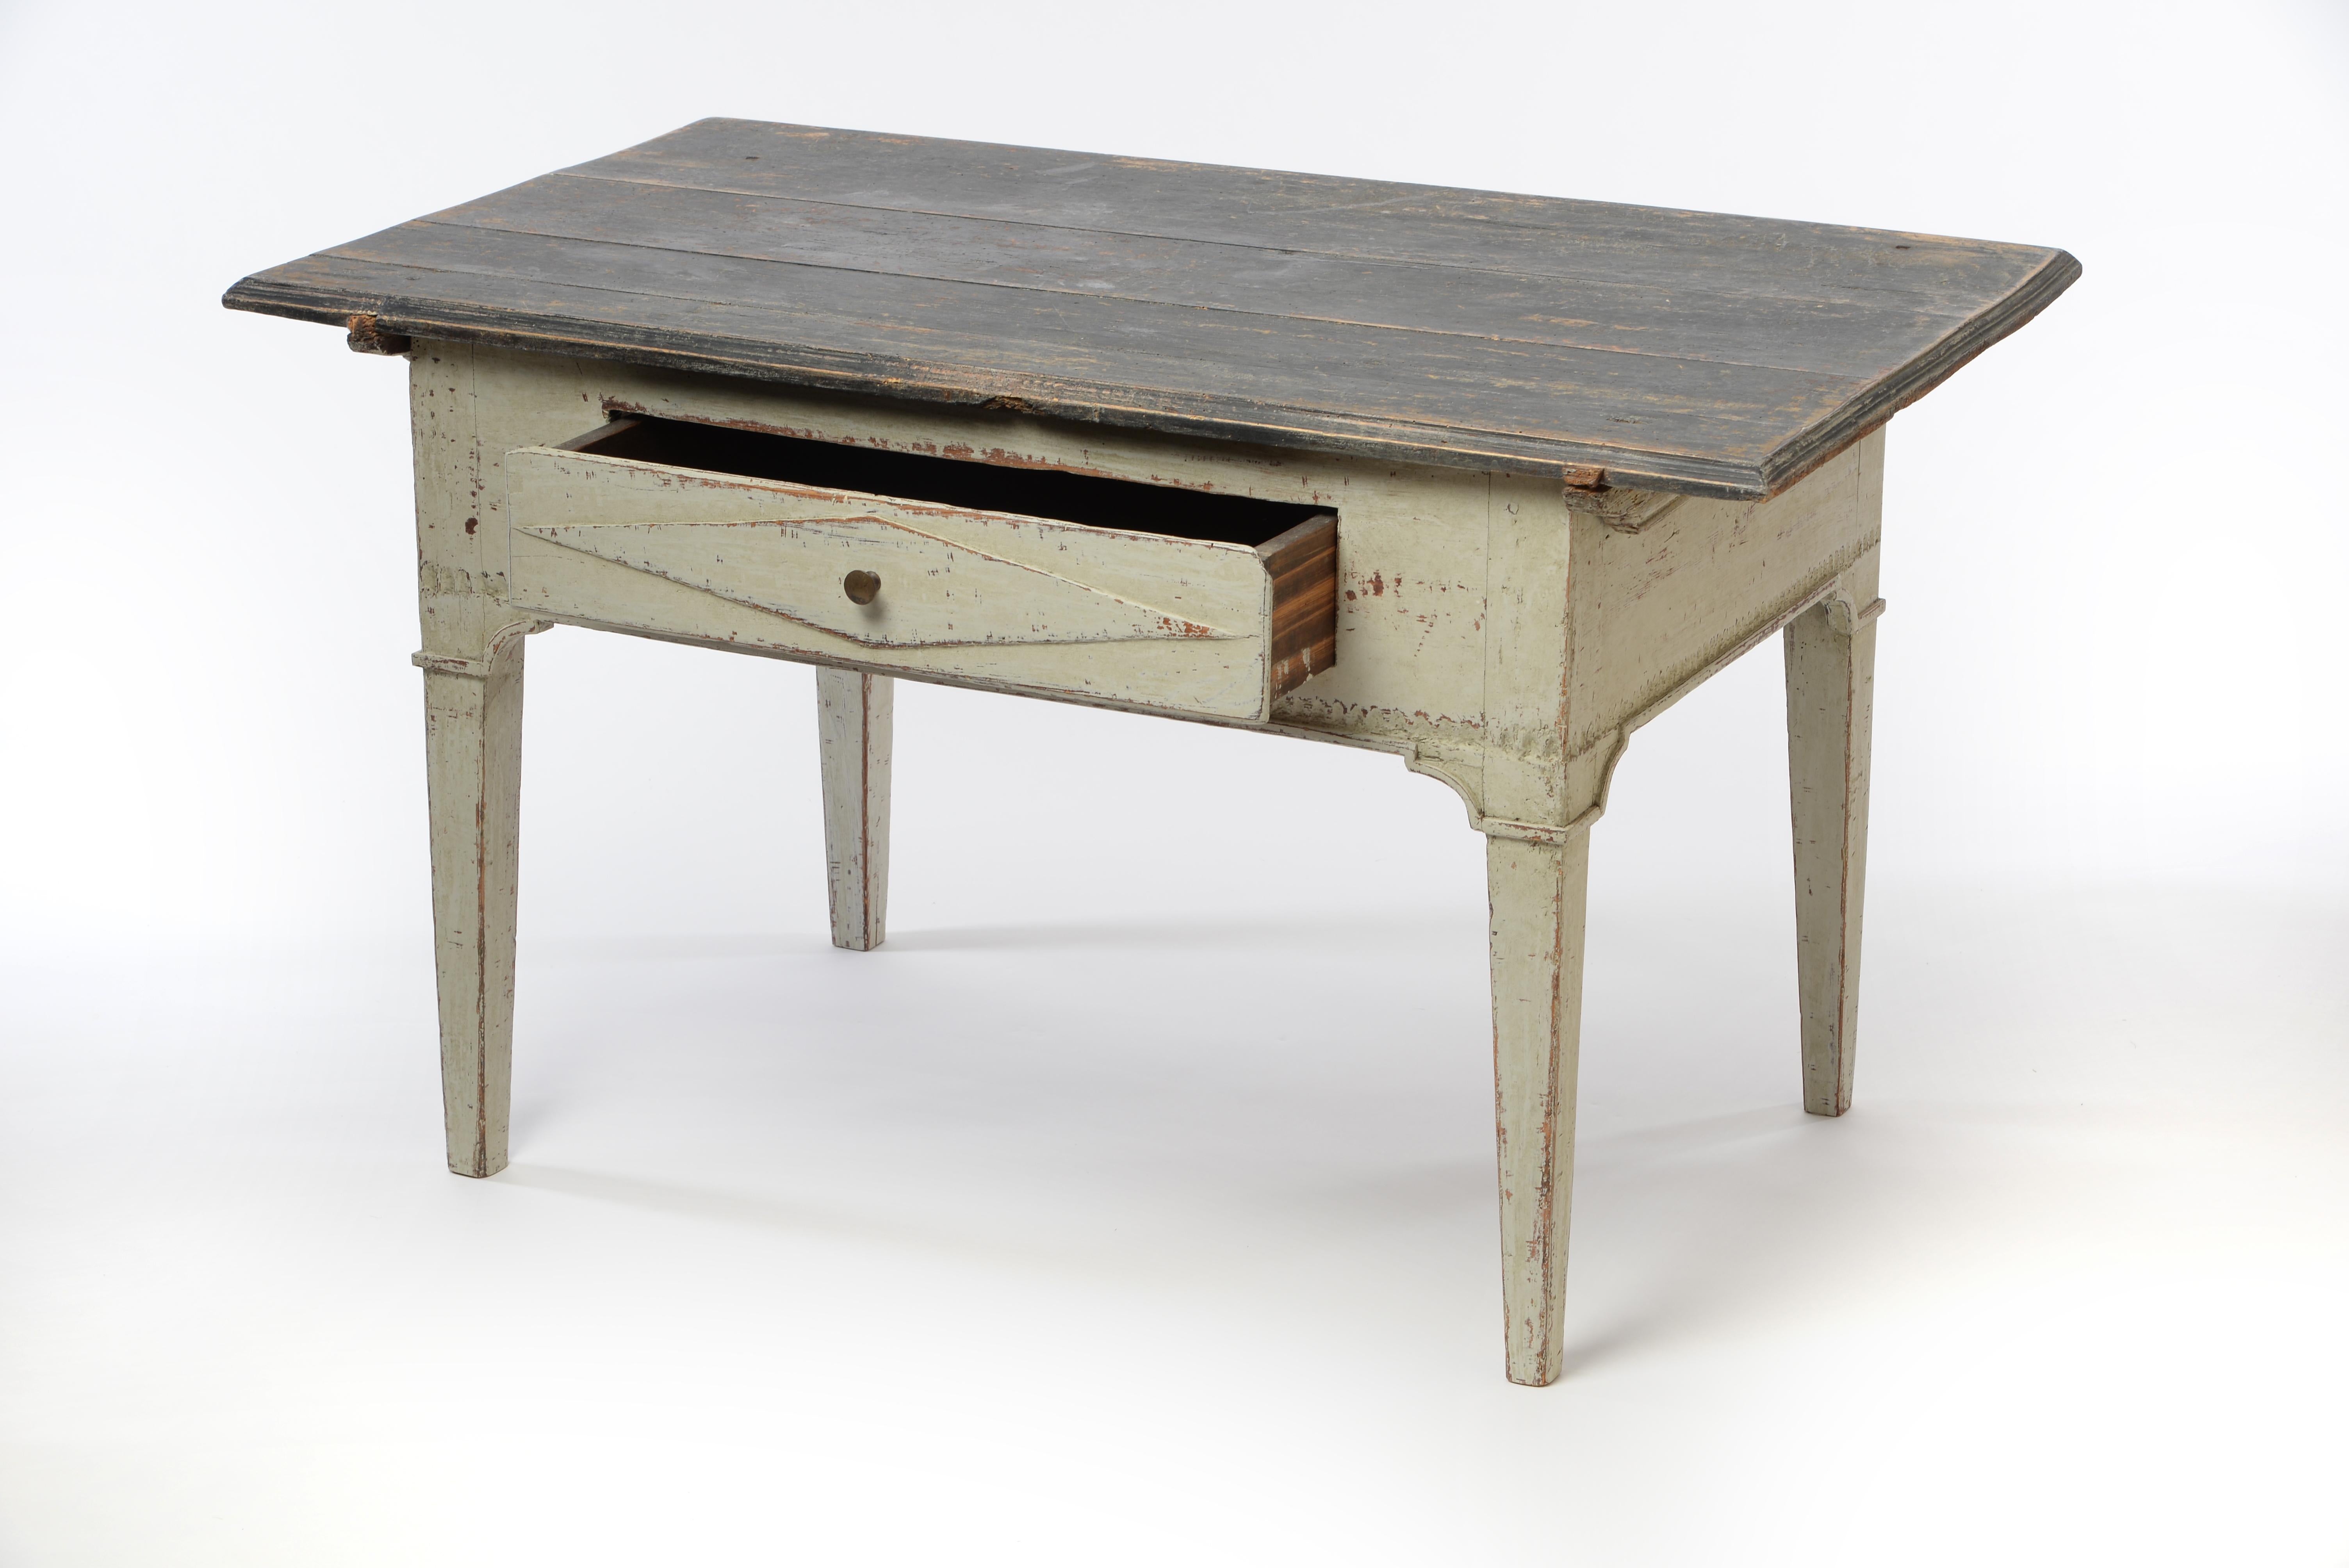 Dieser einzigartige gustavianische niedrige Tisch hat durch seine geringe Höhe, die vordere Schublade und die überlappende Tischplatte ein sehr charmantes Aussehen. Die dunklere, abnehmbare Tischplatte verleiht dem Tisch zusätzliche Stabilität. Ein